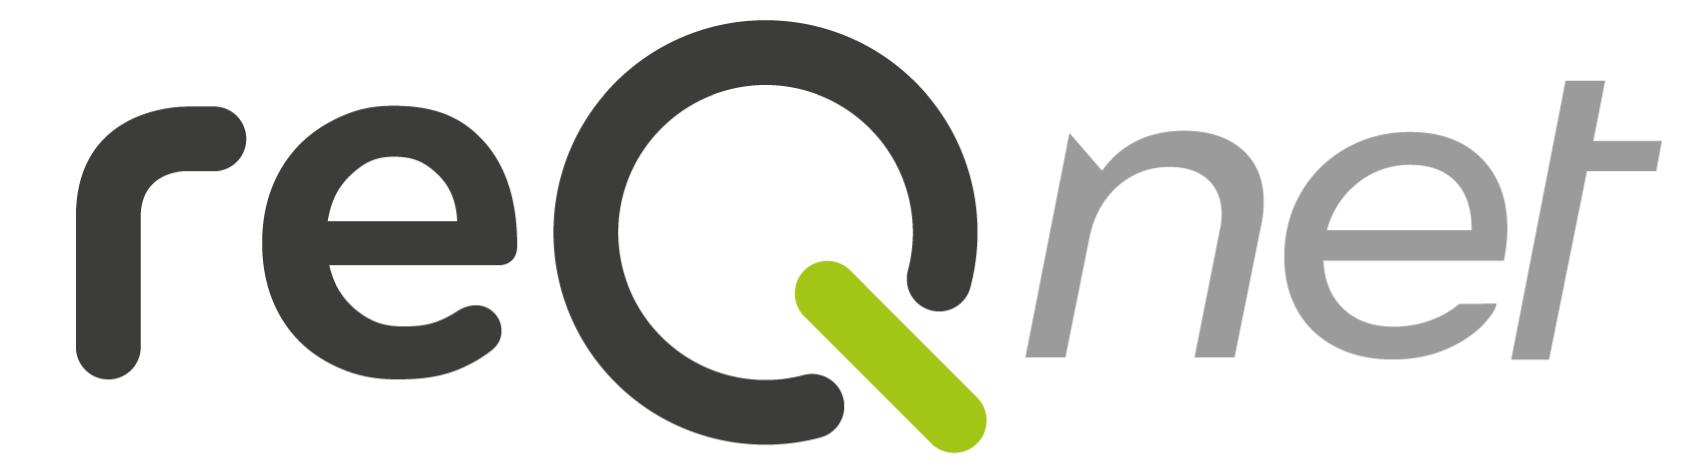 reqnet logo